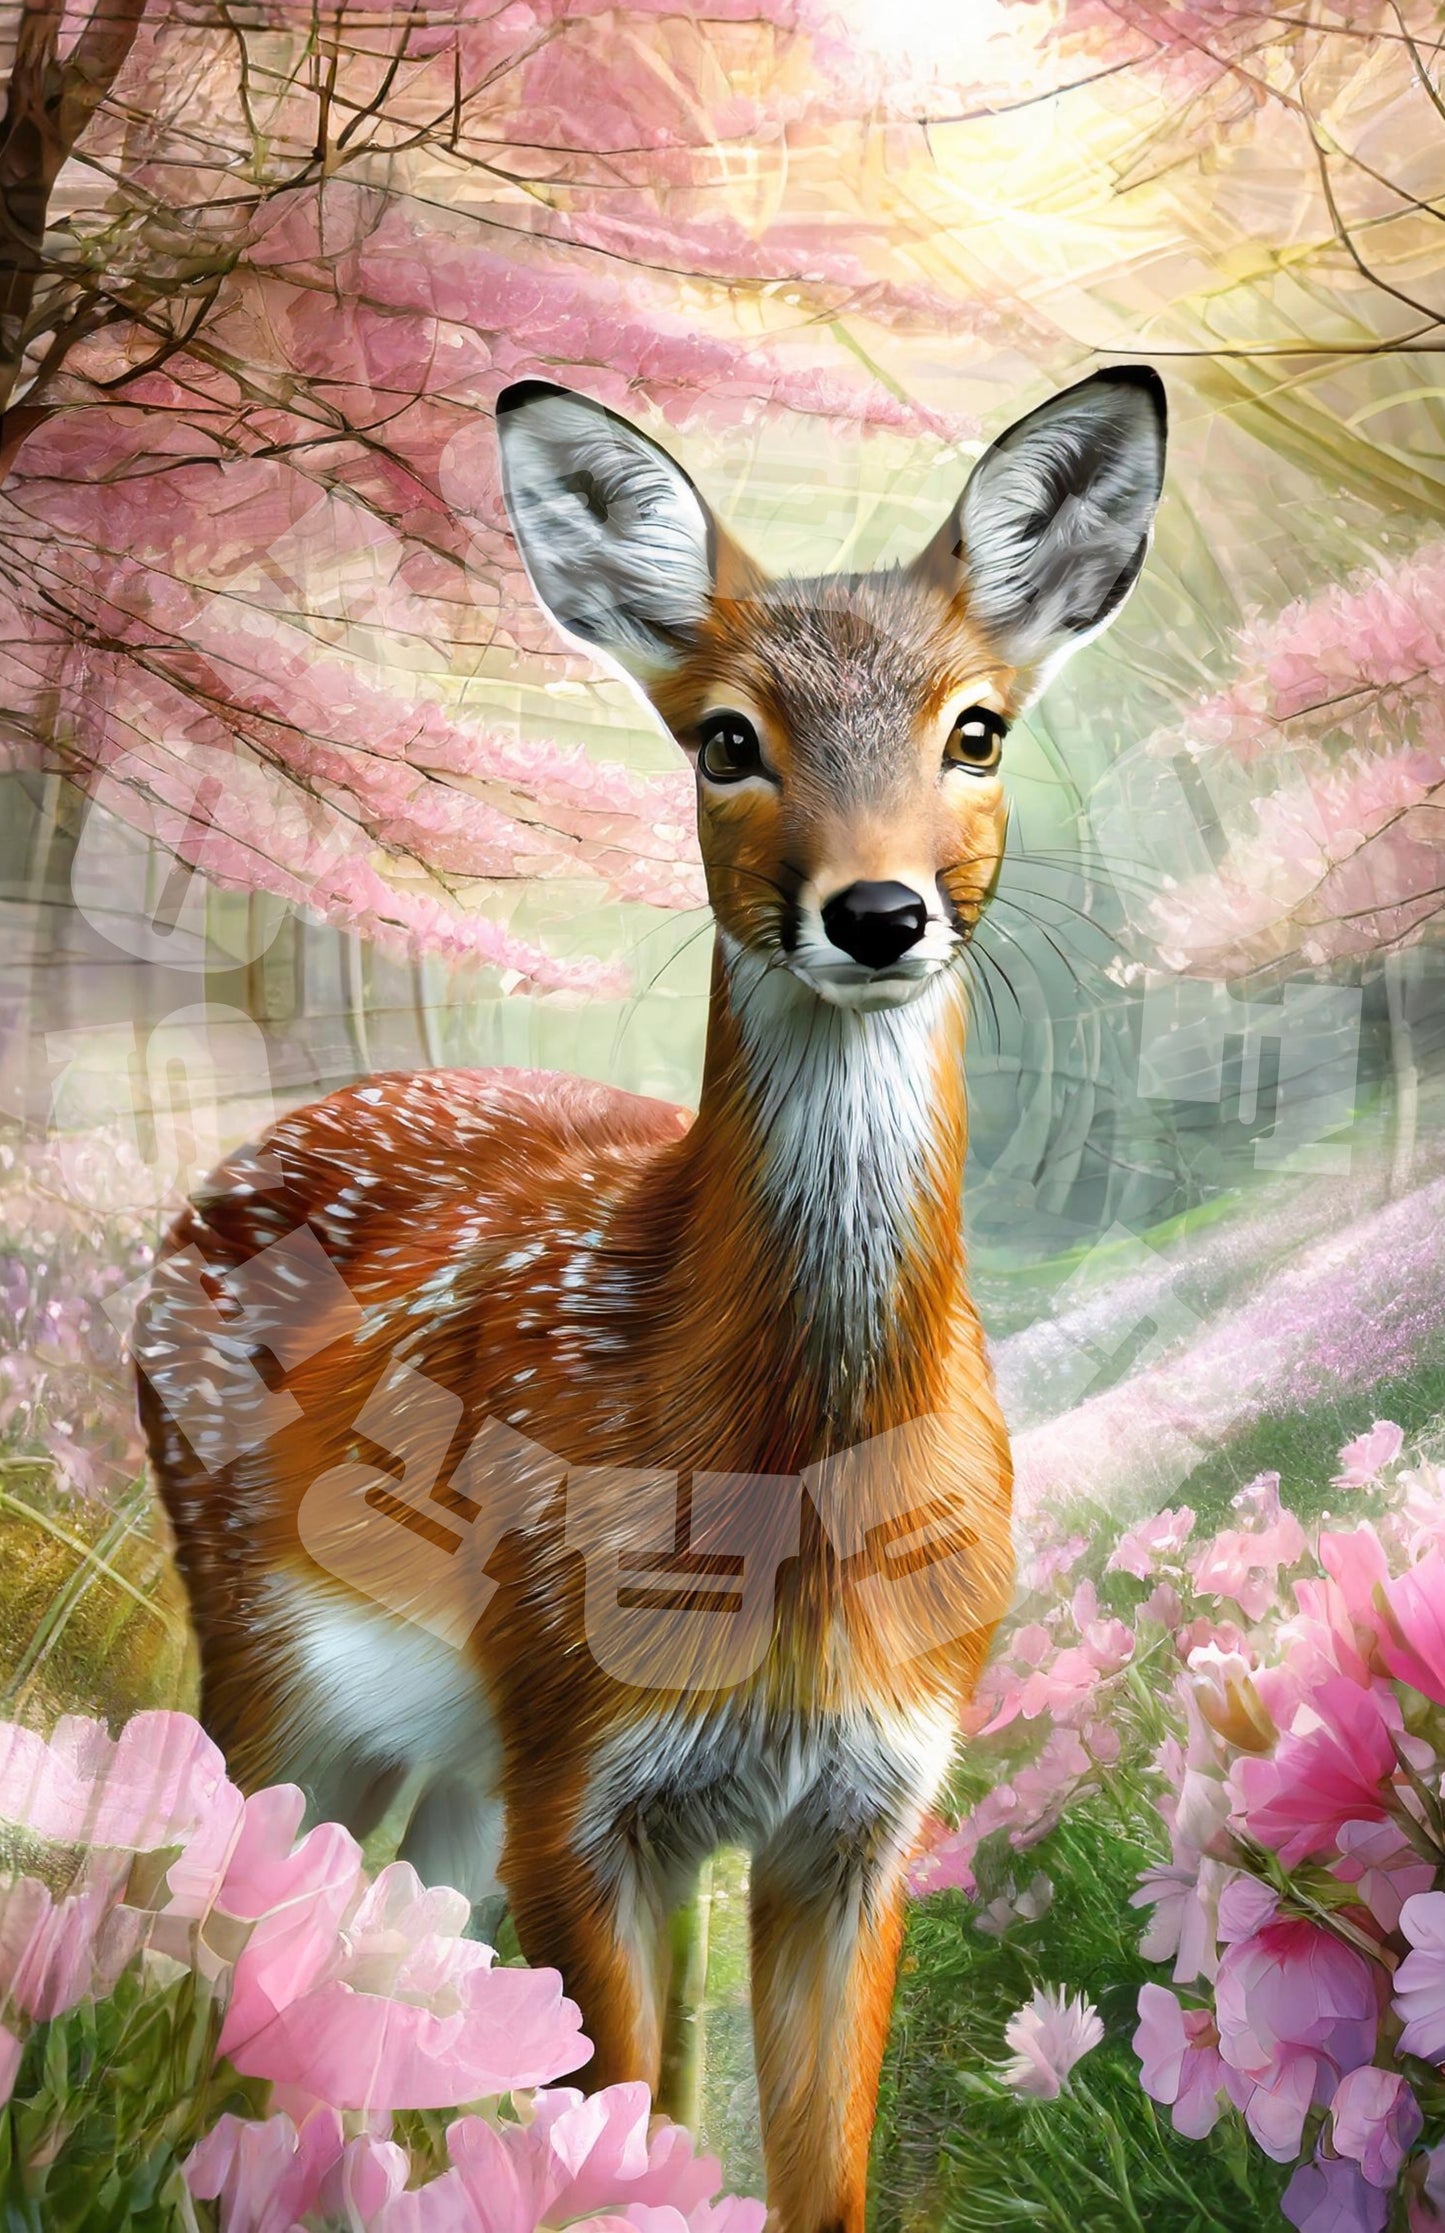 Queen of Hearts Rice Paper Prints - Deer's Haven 3